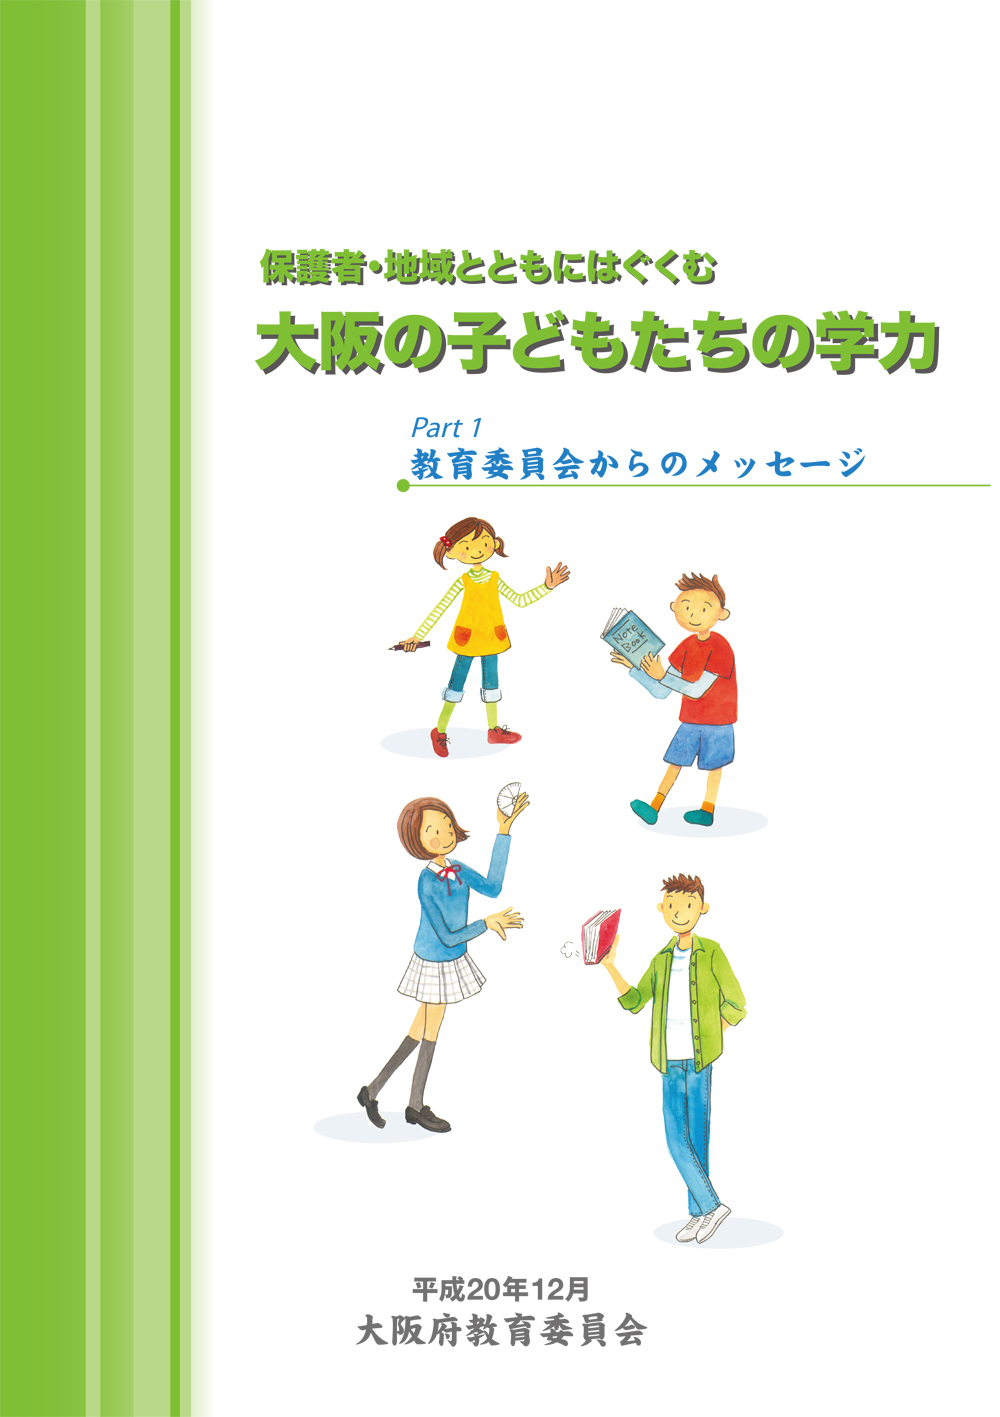 大阪府教育委員会リーフレット「保護者・地域とともにはぐくむ大阪の子どもたちの学力」Part1、Part2、Part3